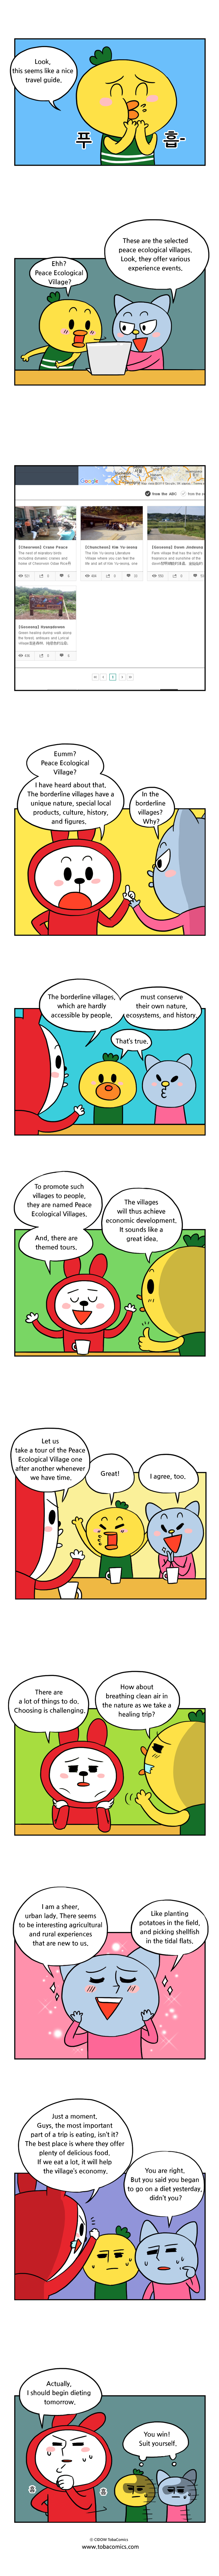 Peaceful eco-village Webtoon02